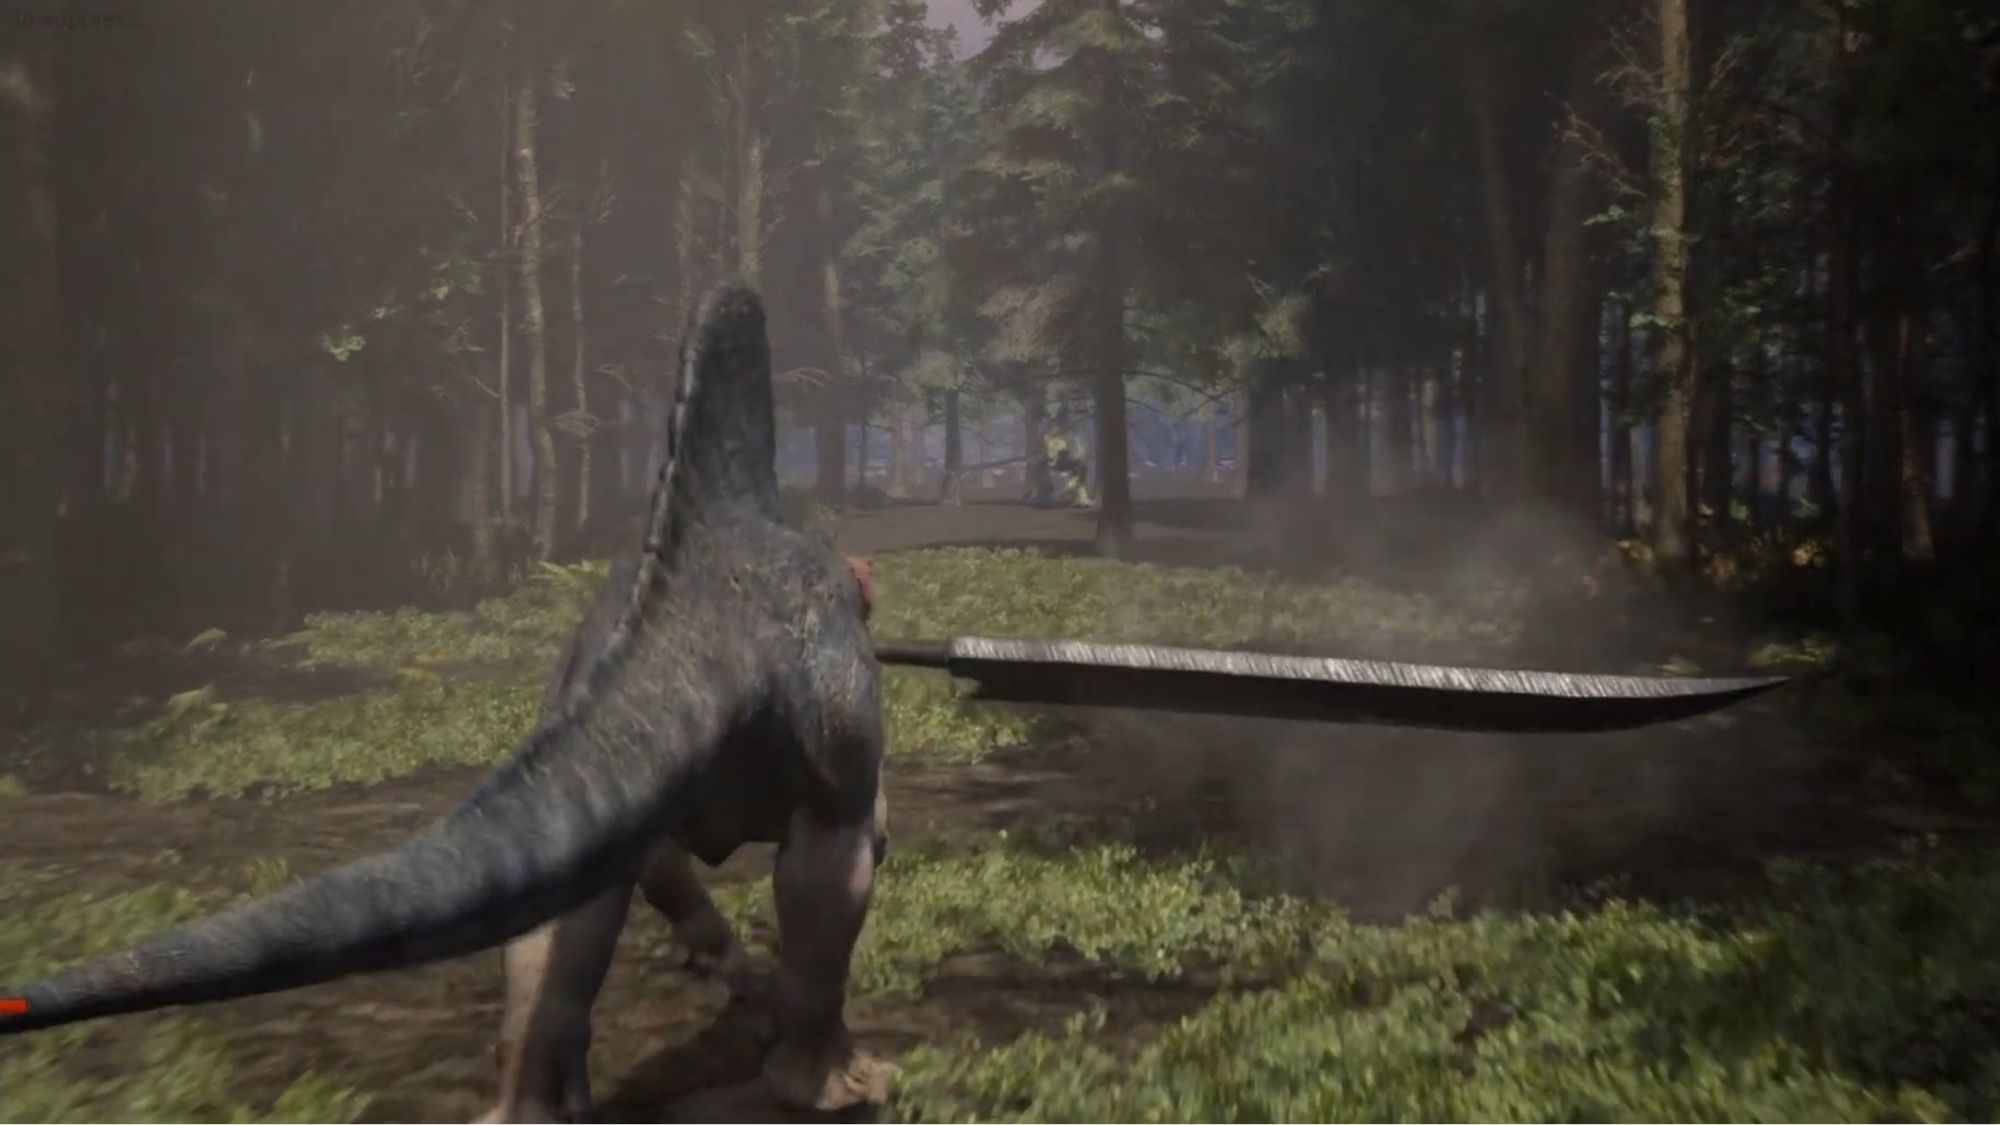 Dino-Sword позволяет вам сражаться с динозаврами 1 на 1 с помощью меча Бастера.